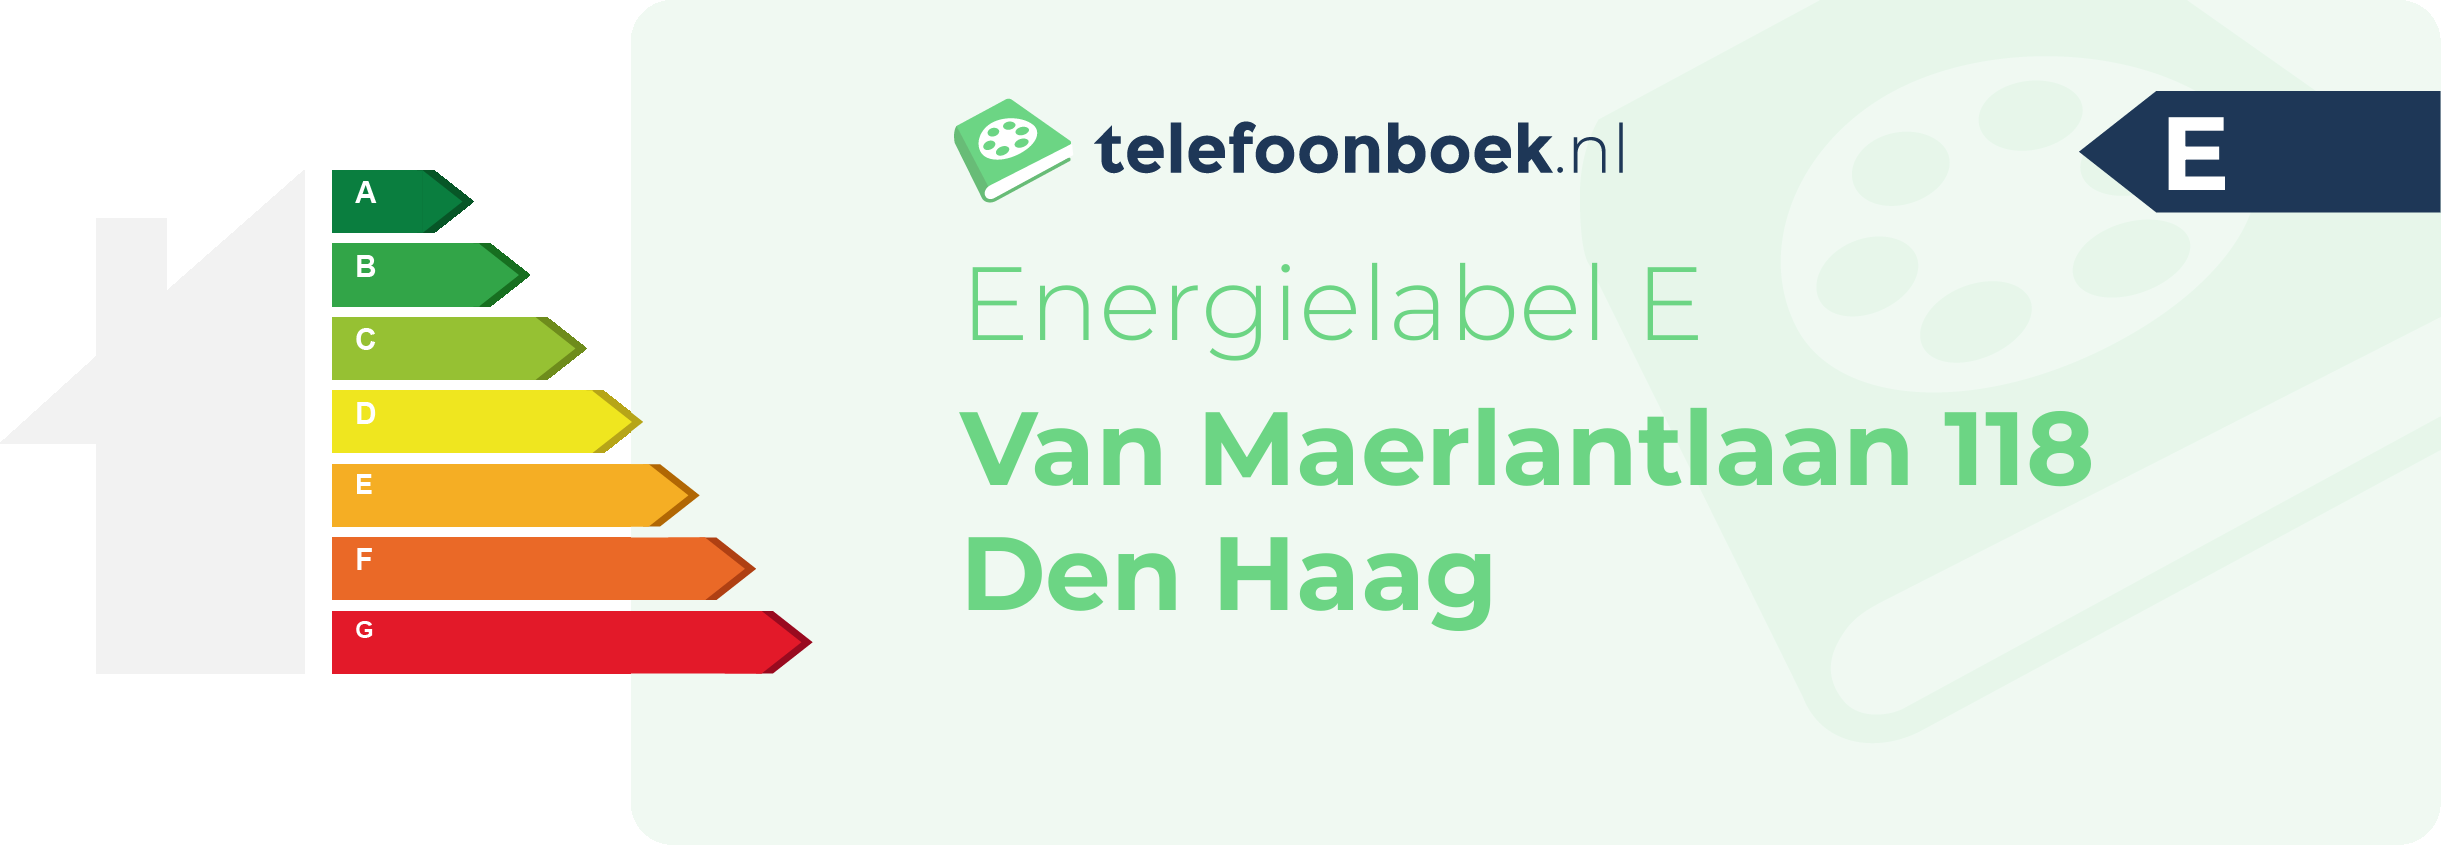 Energielabel Van Maerlantlaan 118 Den Haag